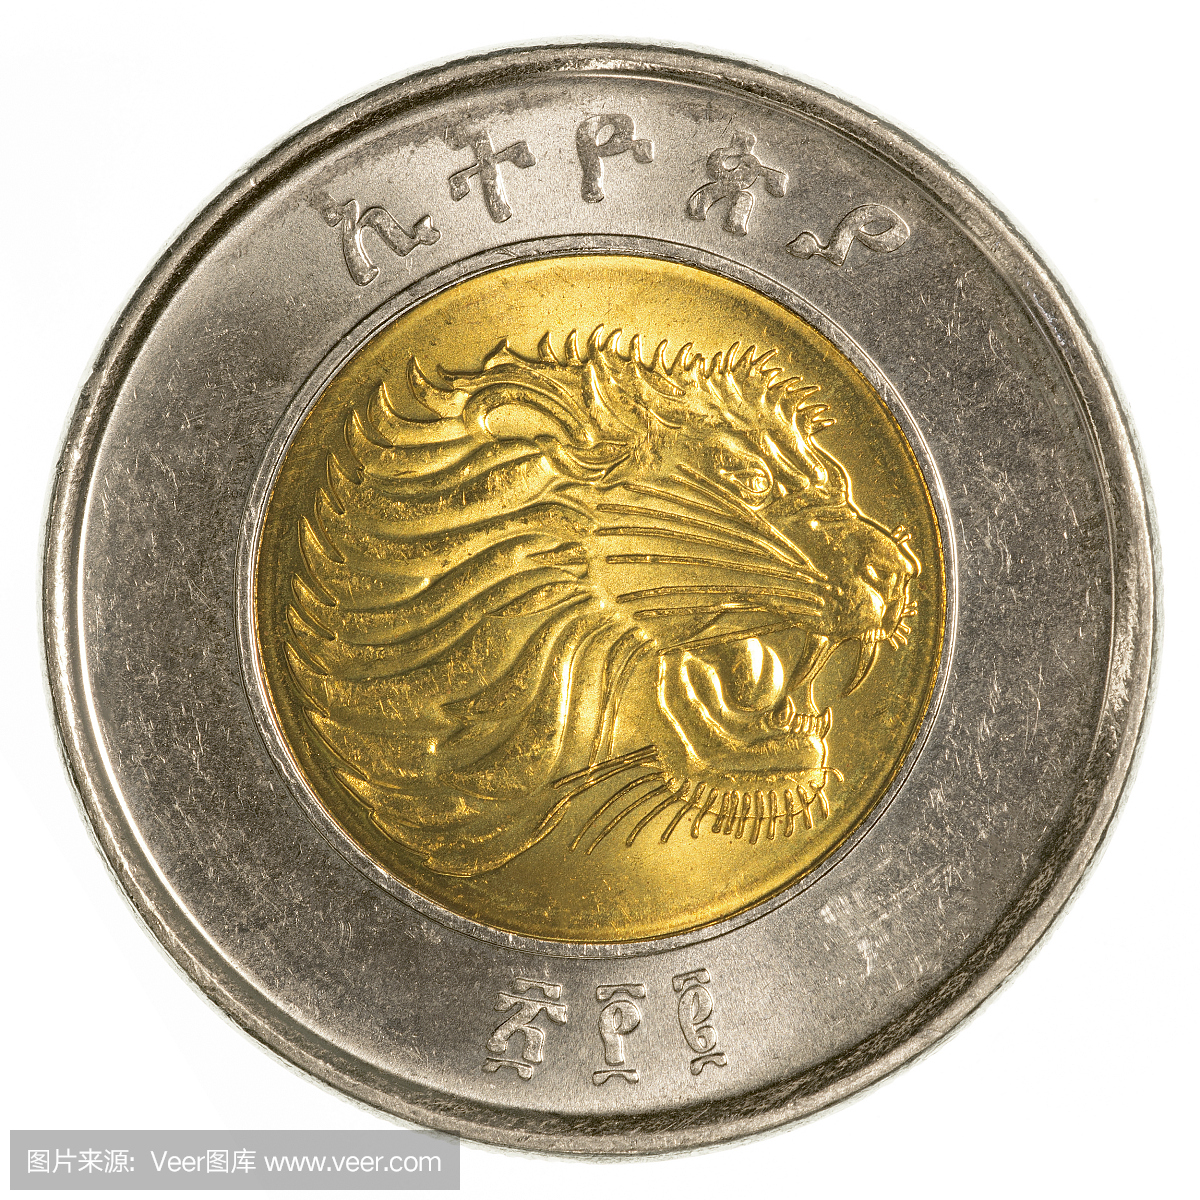 1埃塞俄比亚比尔硬币